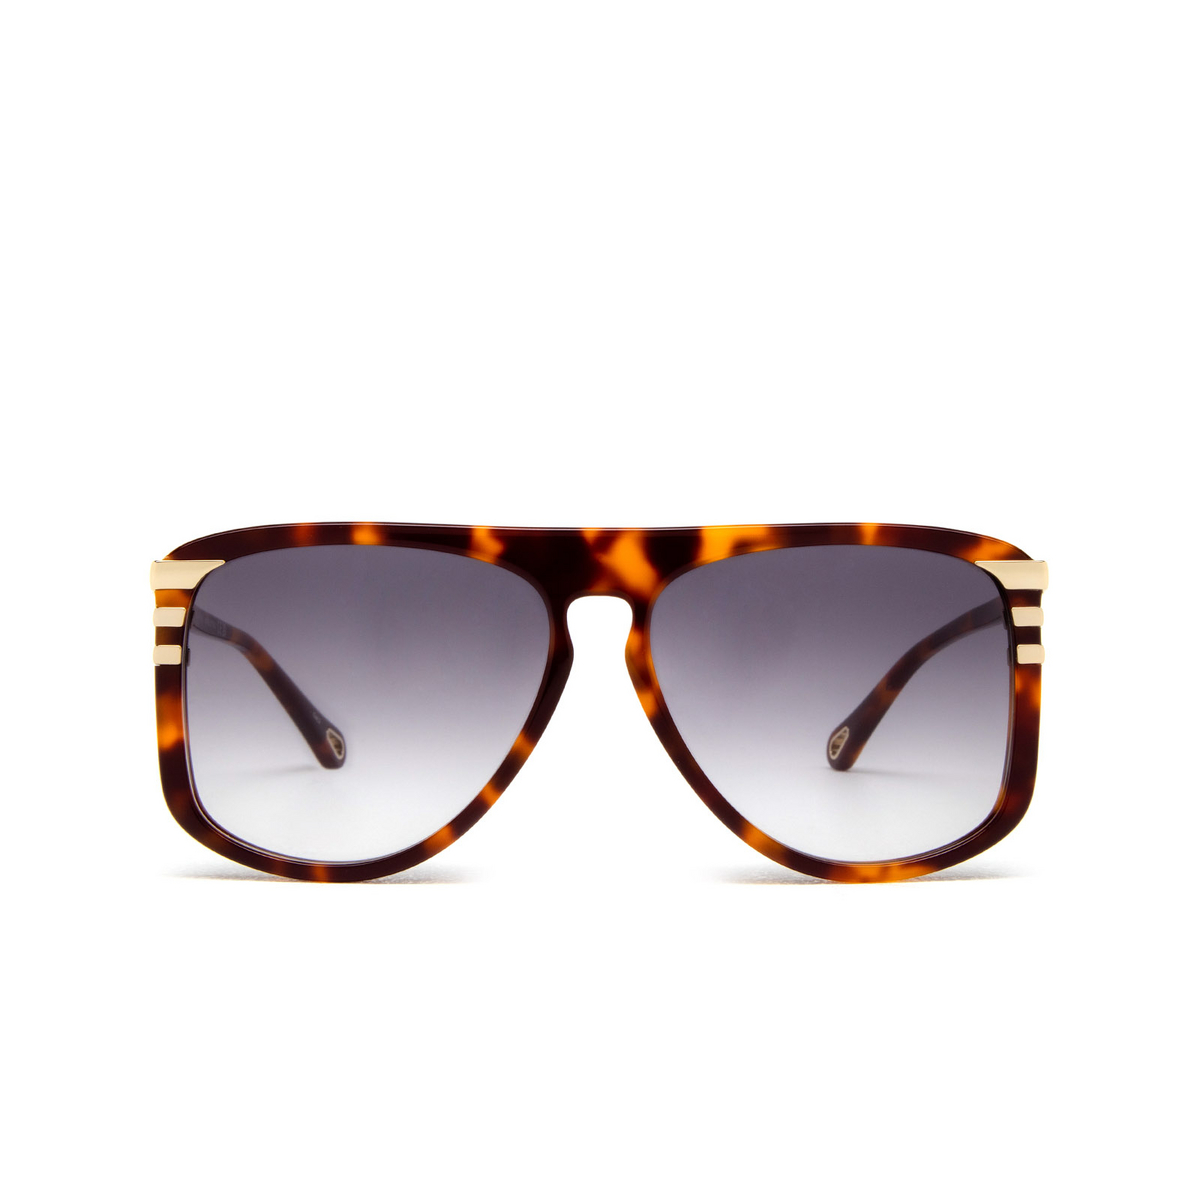 Chloé West mask Sunglasses 007 Havana - front view